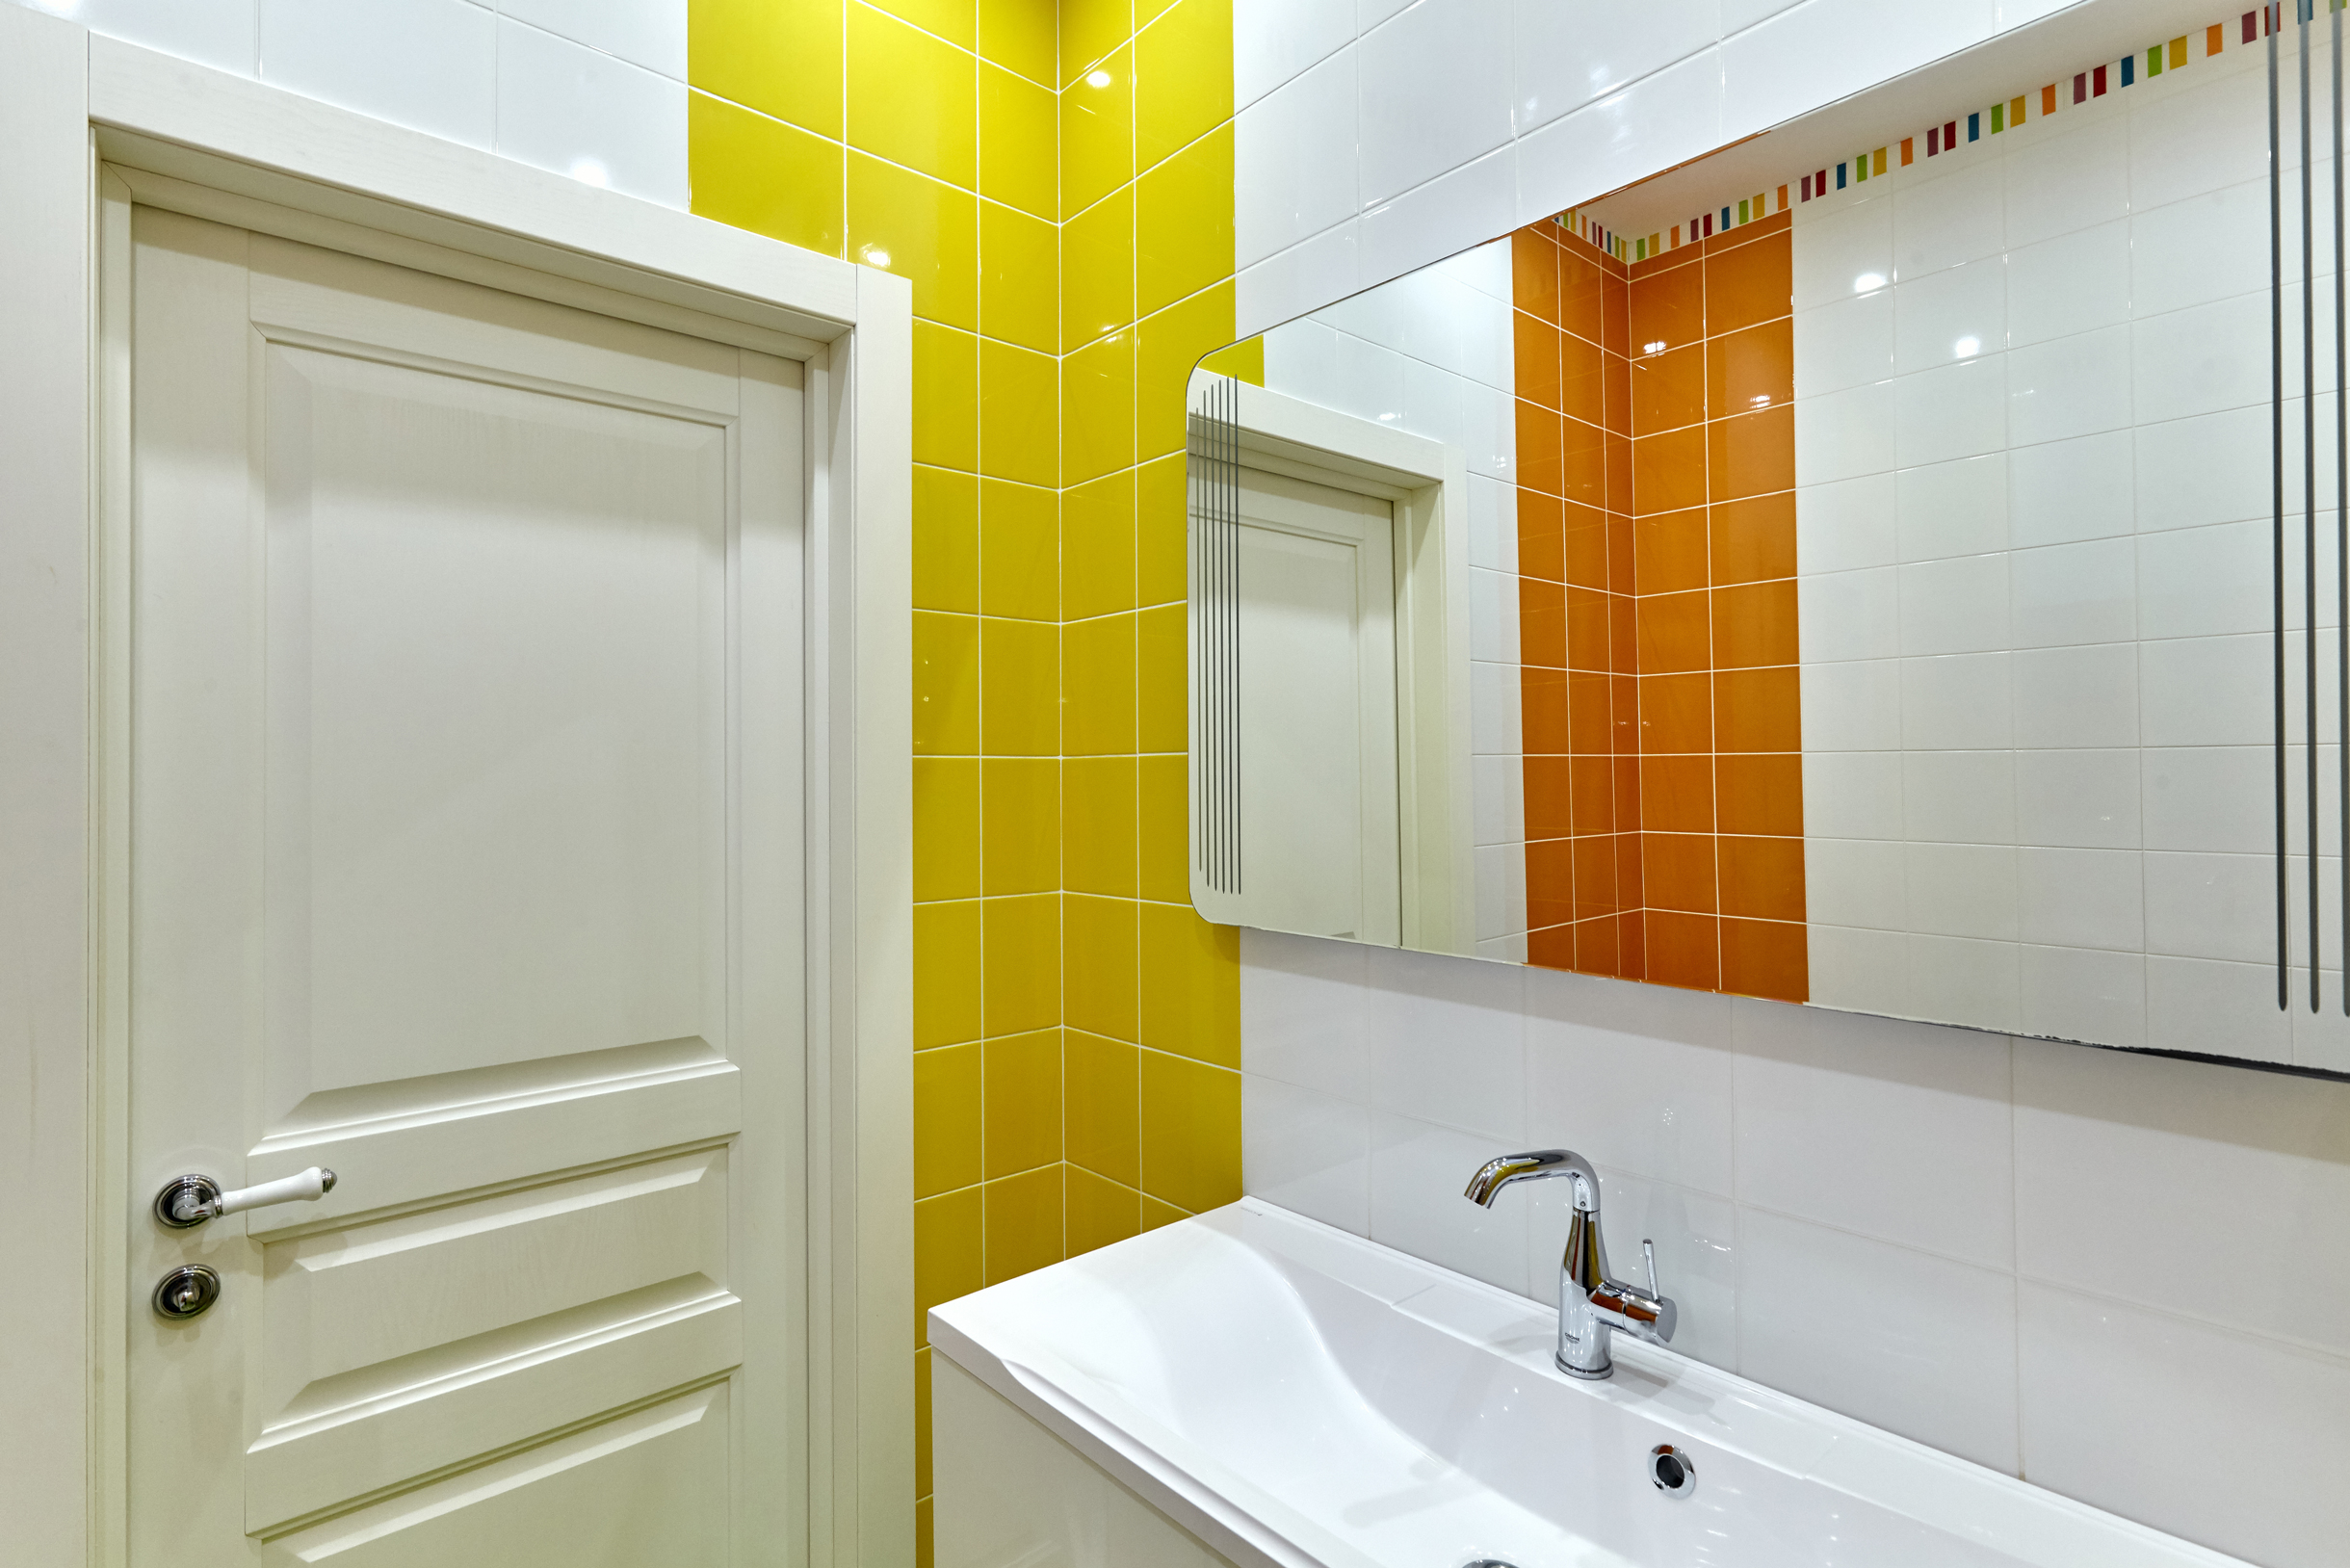 В ванной попробуйте добавить ярких акцентов. Если переживаете, что плитка быстро надоест, лучше выбрать разноцветные шторки для душа, коврики и полотенца. Фотография: Stelmakh Oxana / Shutterstock / FOTODOM